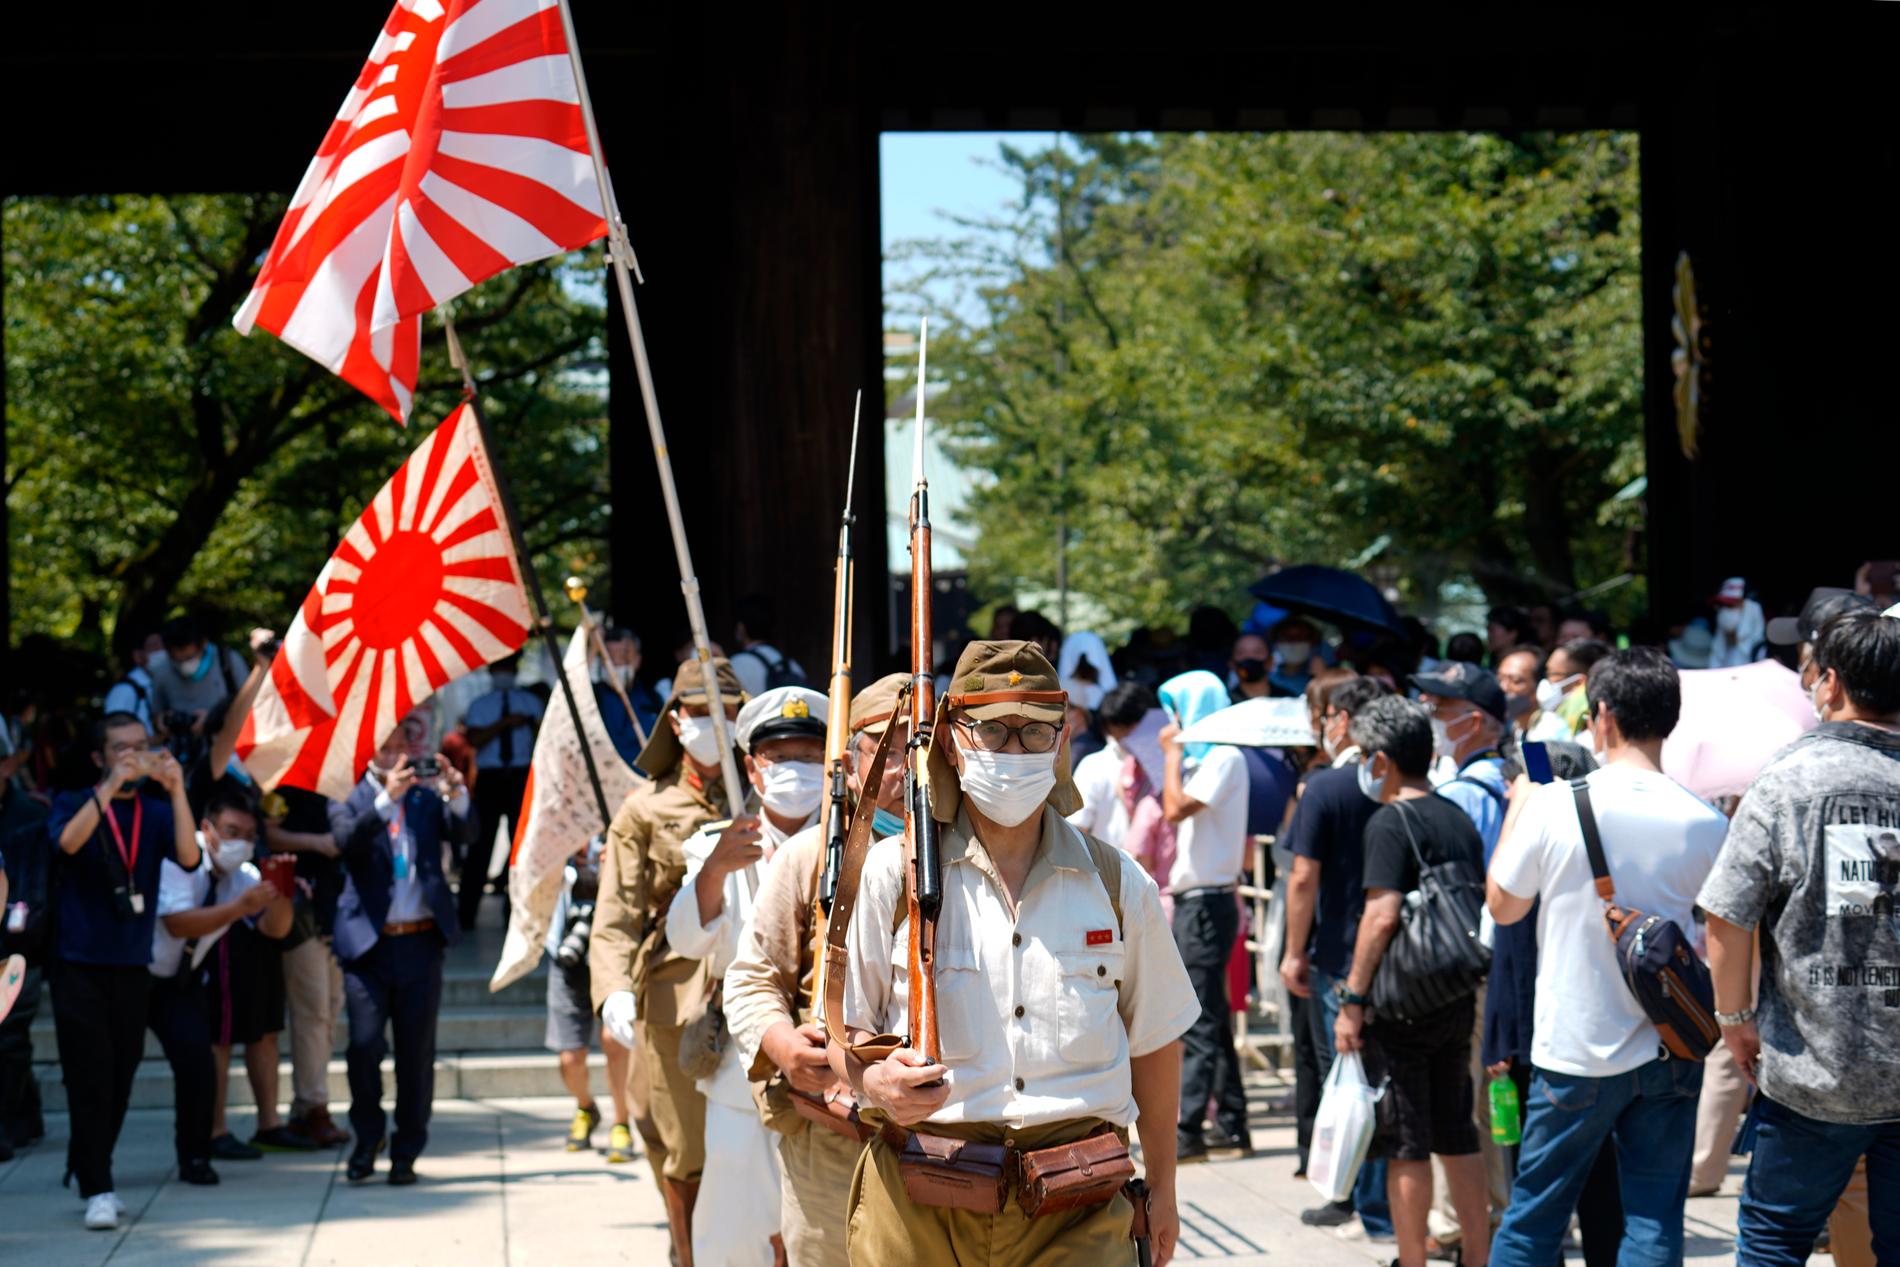 Under 75-årsdagen bar besökare vid shintohelgedomen flaggor från den kejserliga japanska armén, som upplöstes efter krigsslutet.